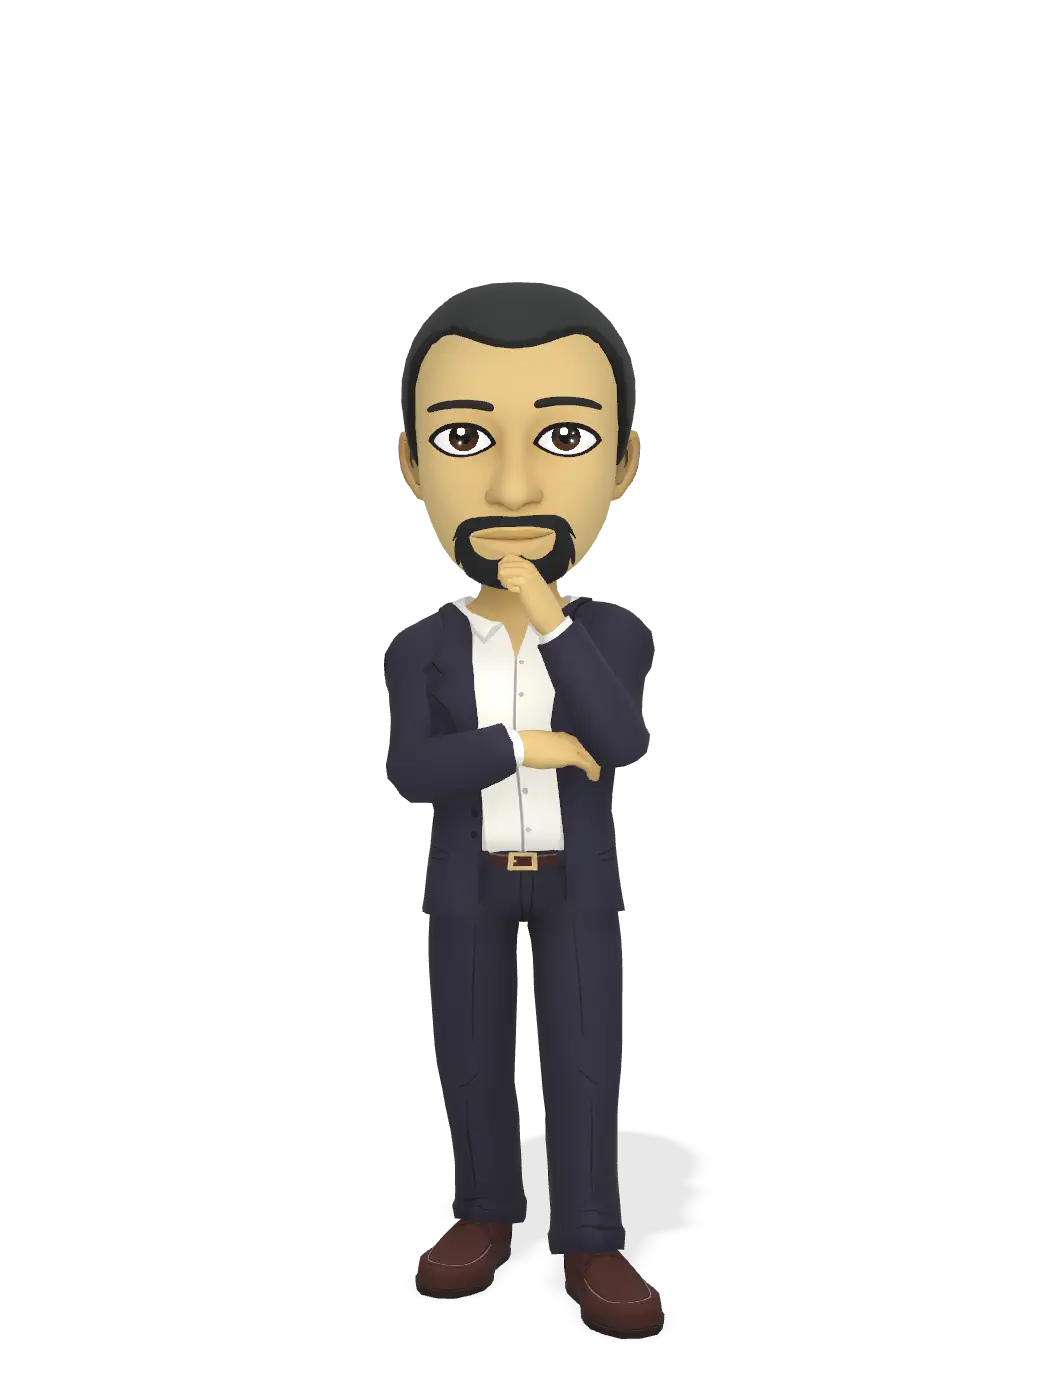 3D Bitmoji for threedashsixty avatar